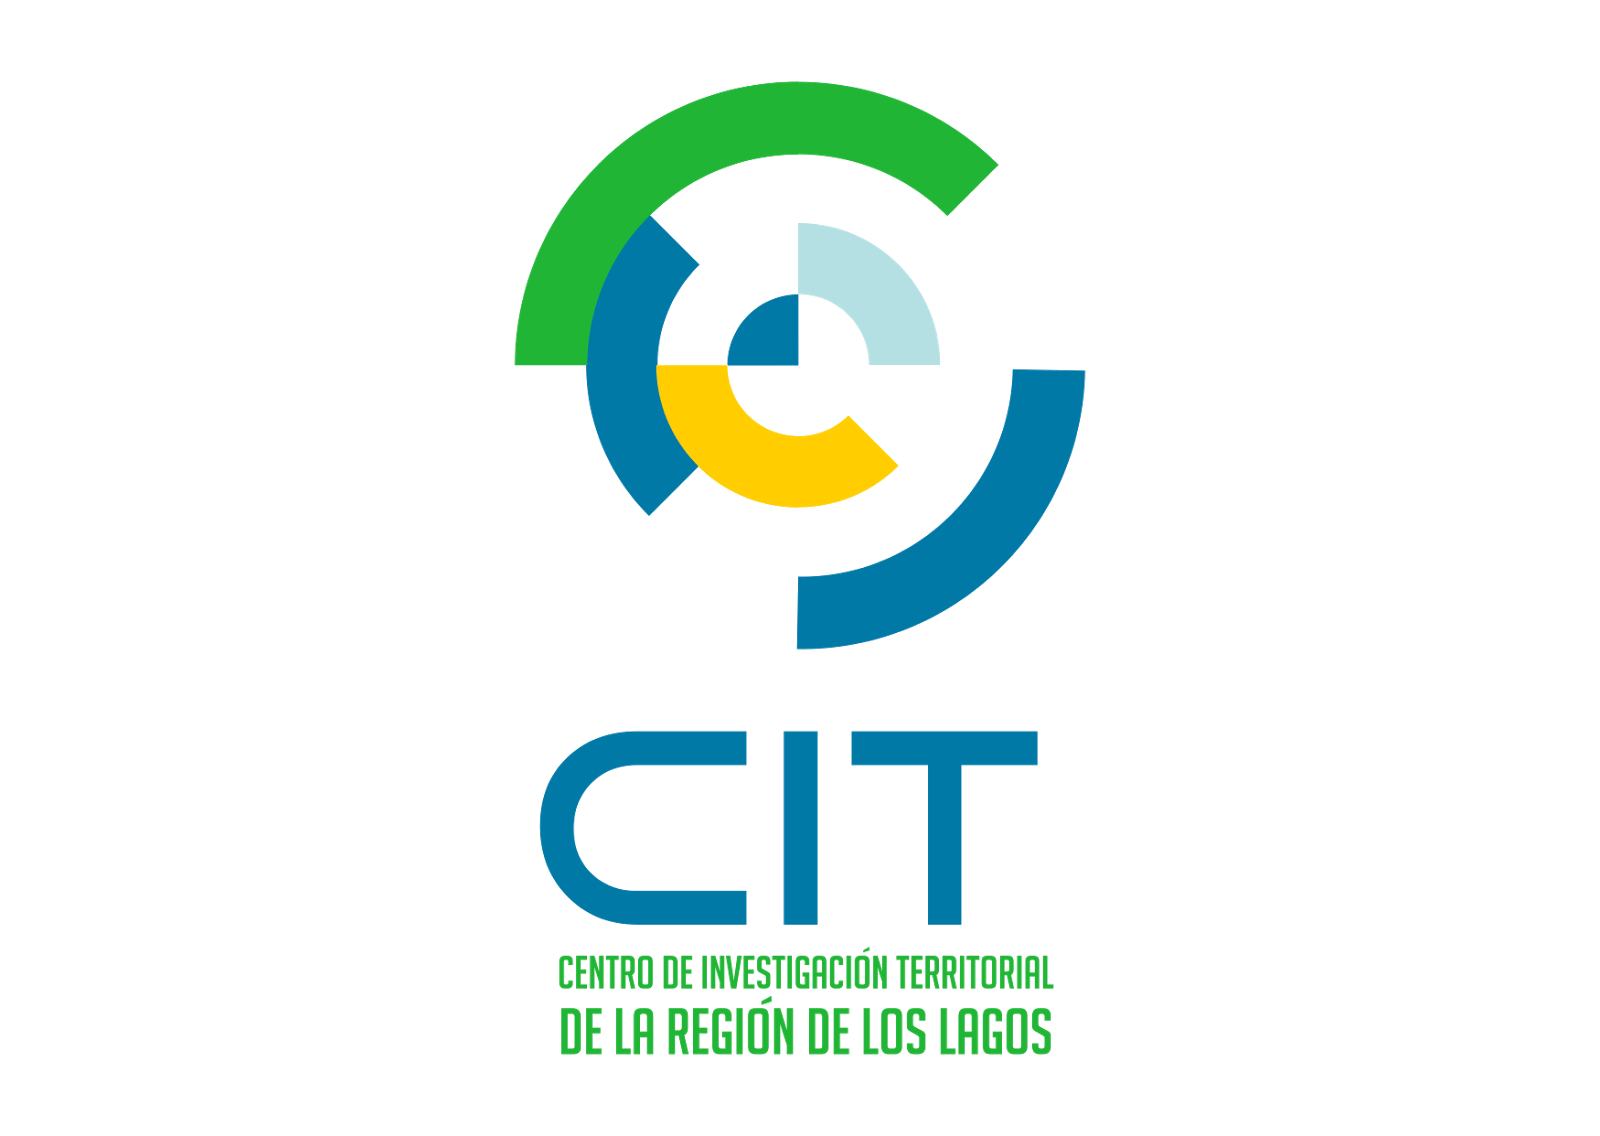 CIT Logo - Cit Logo Vector Format Cdr, Ai, Eps, Svg, PDF, PNG